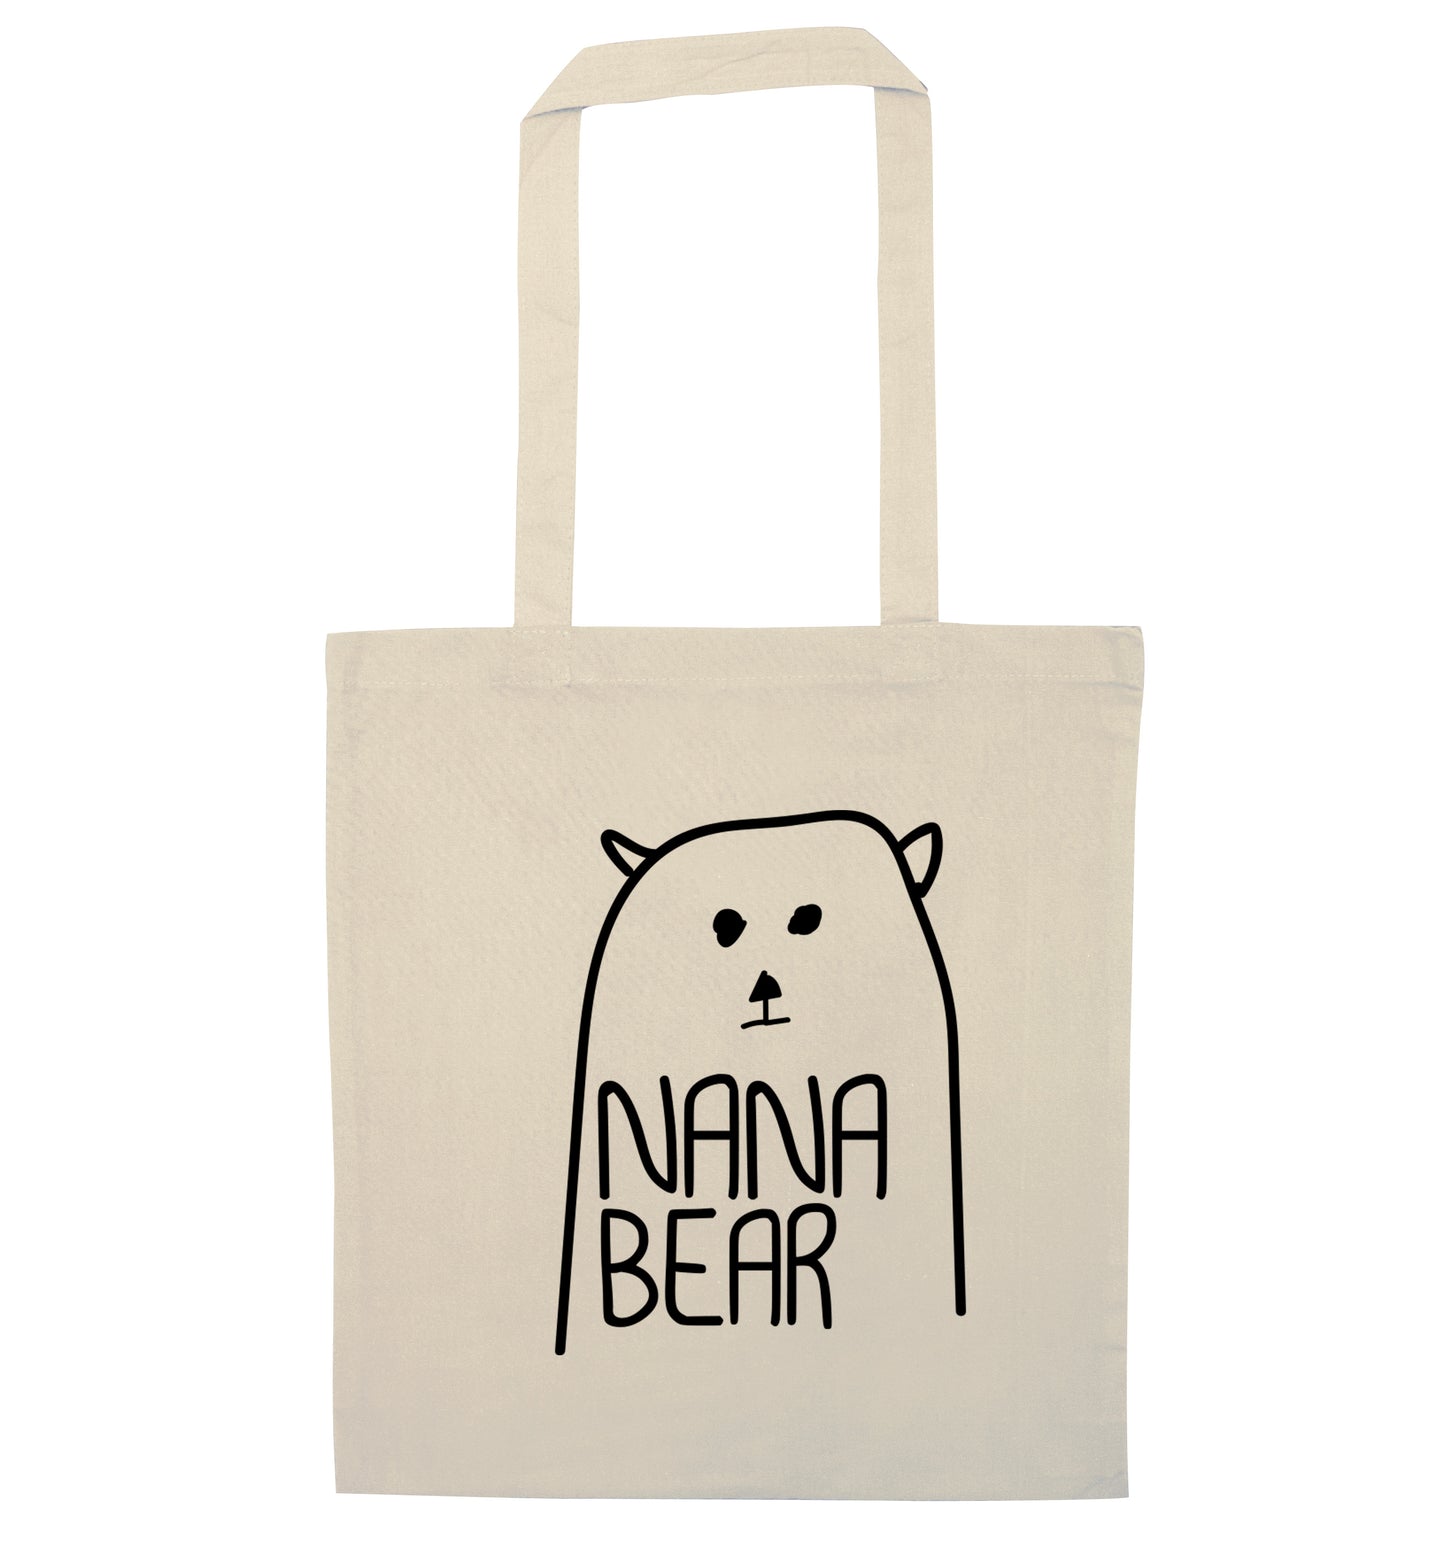 Nana bear natural tote bag